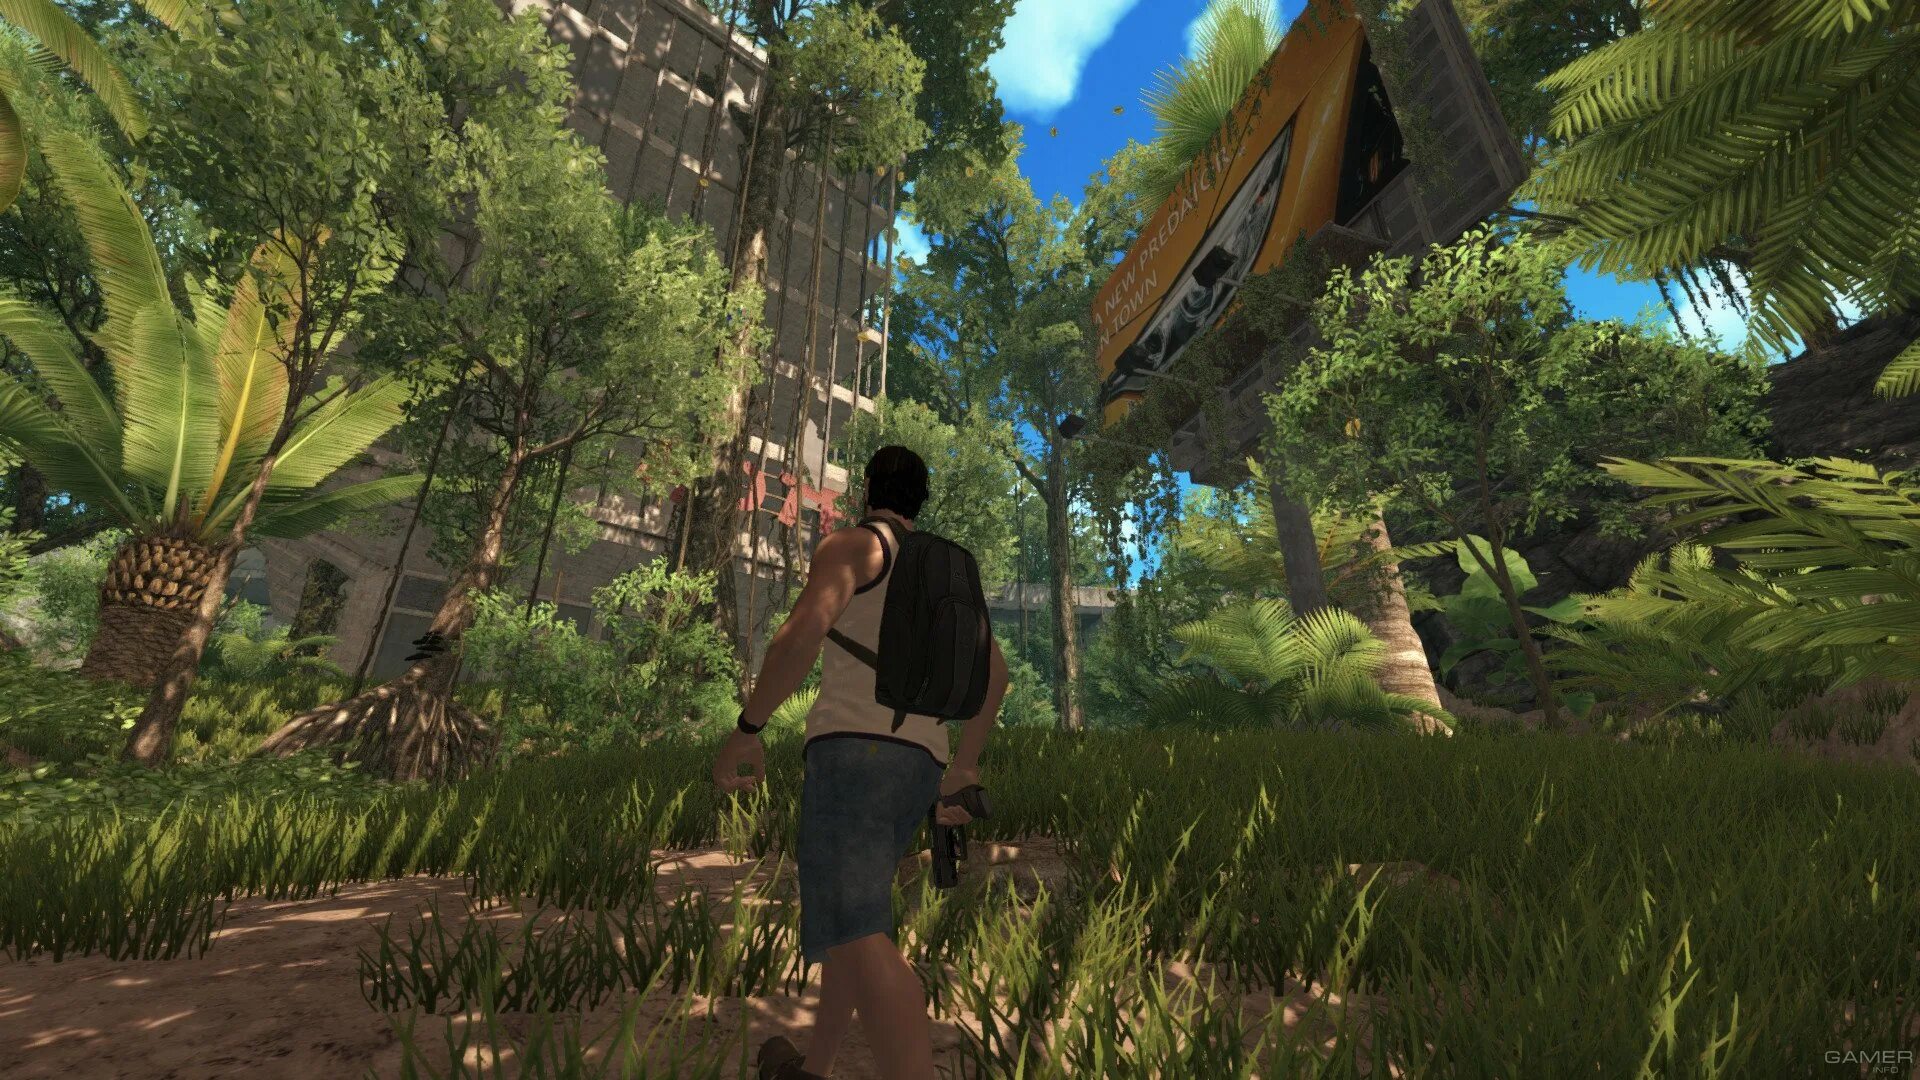 Dinosis Survival. Скриншоты игр про выживания. Игра для ПК на выживания 2017.